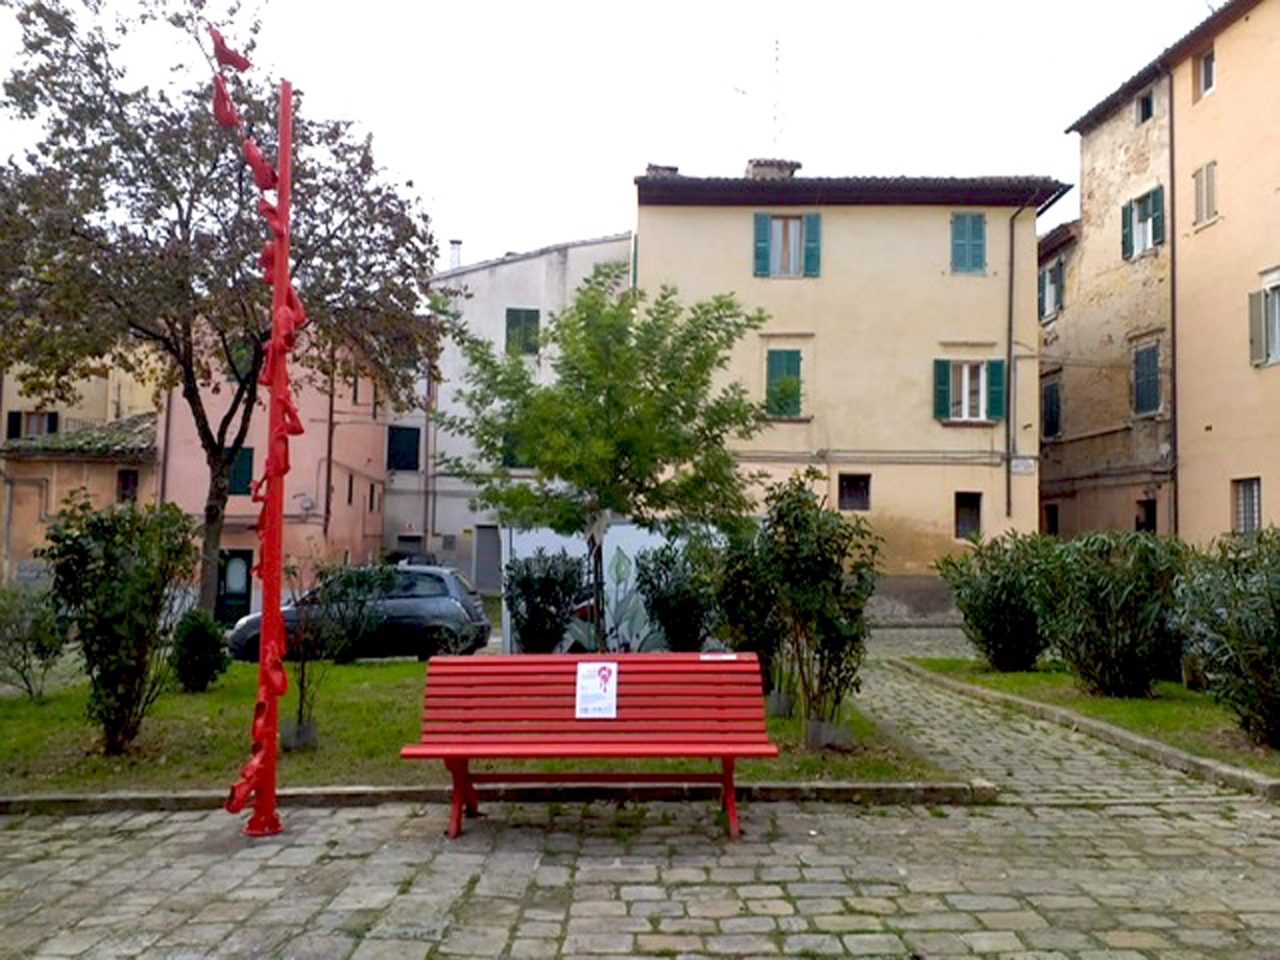 foto installazione scarpette rosse vicino la panchina, Sansovino Jesi